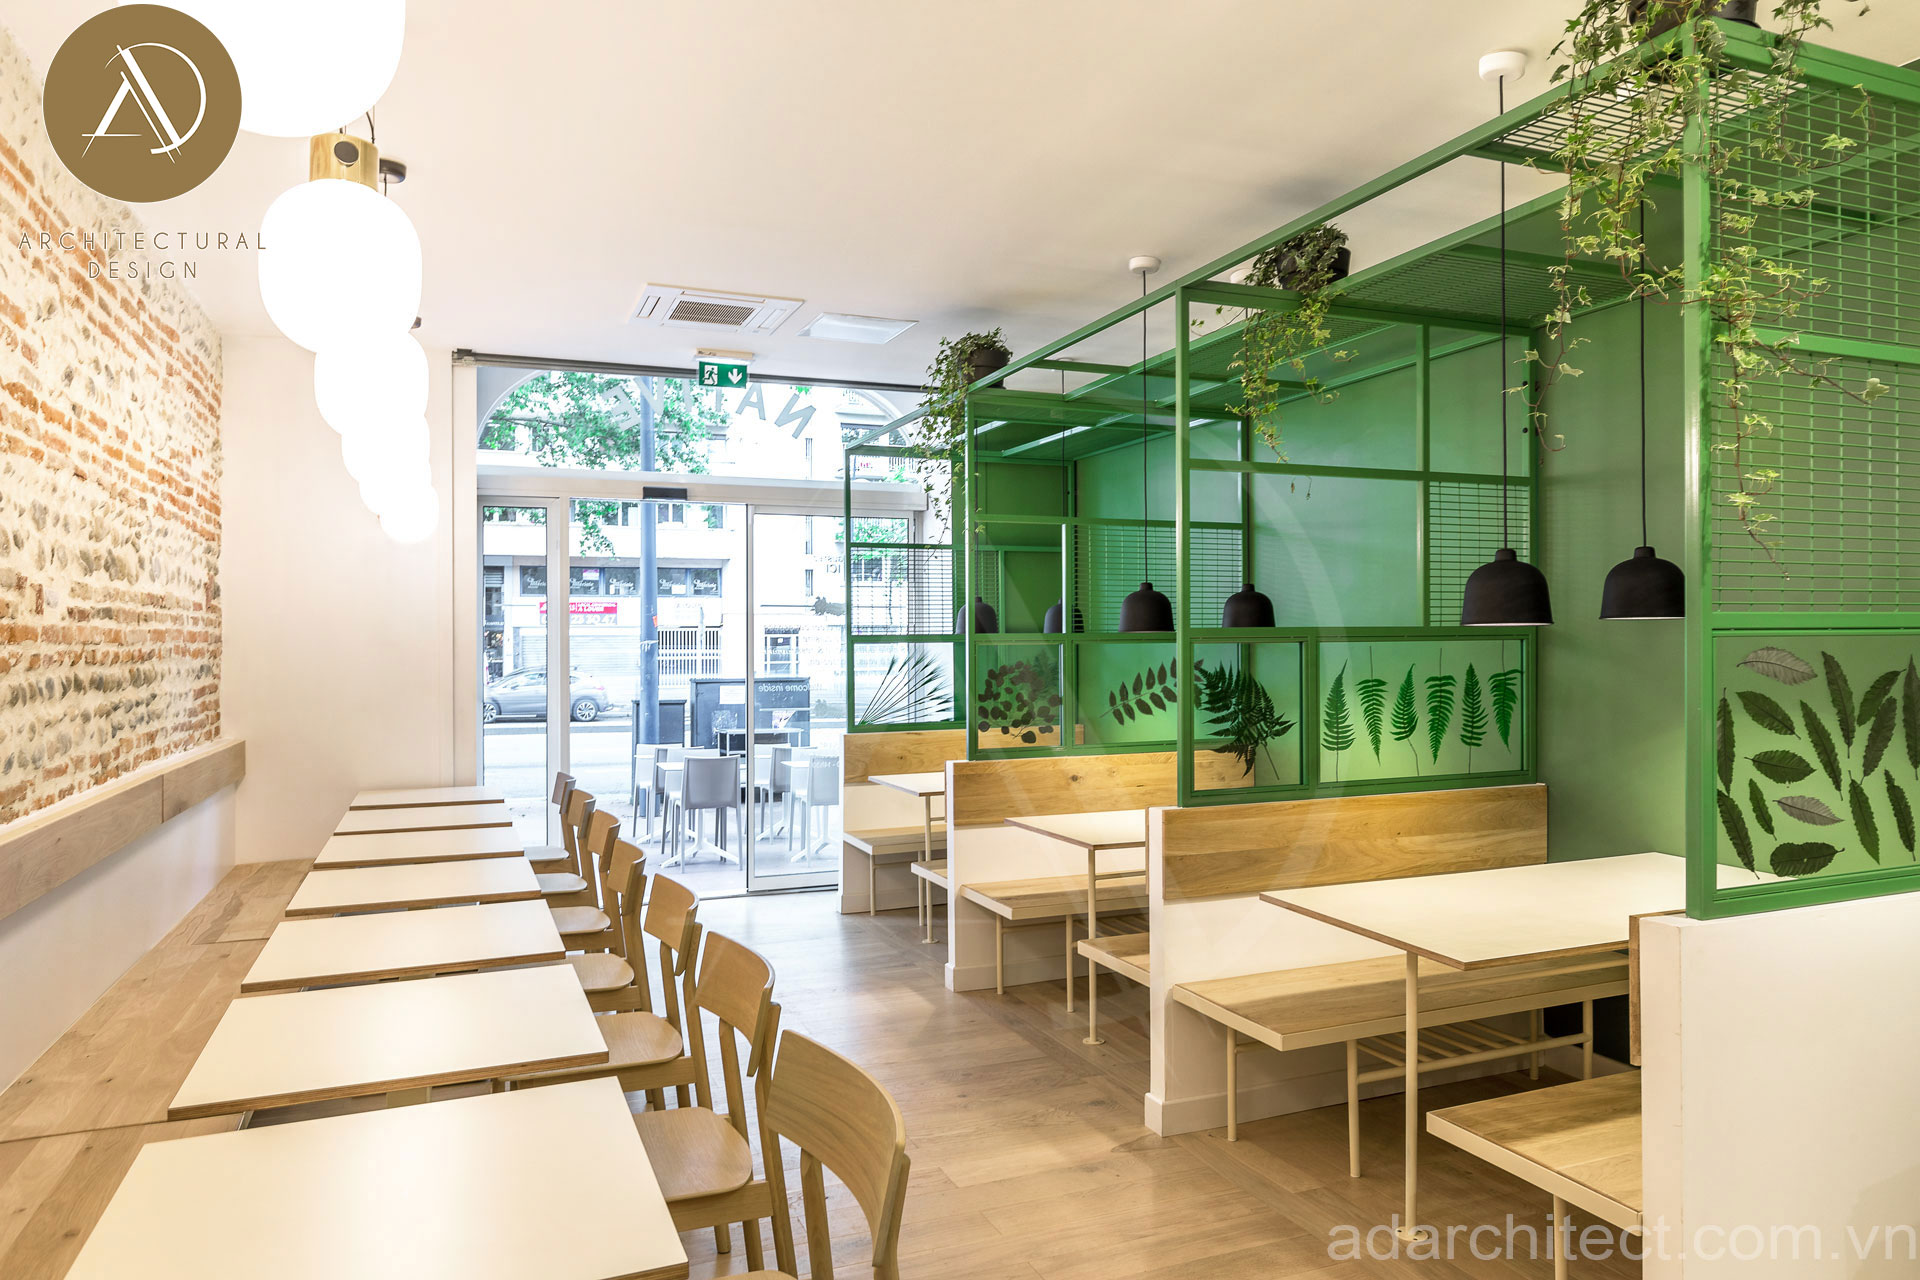 thiết kế quán ăn: thiết kế nhà hàng ăn uống bình dân nhỏ gọn giả rẻ